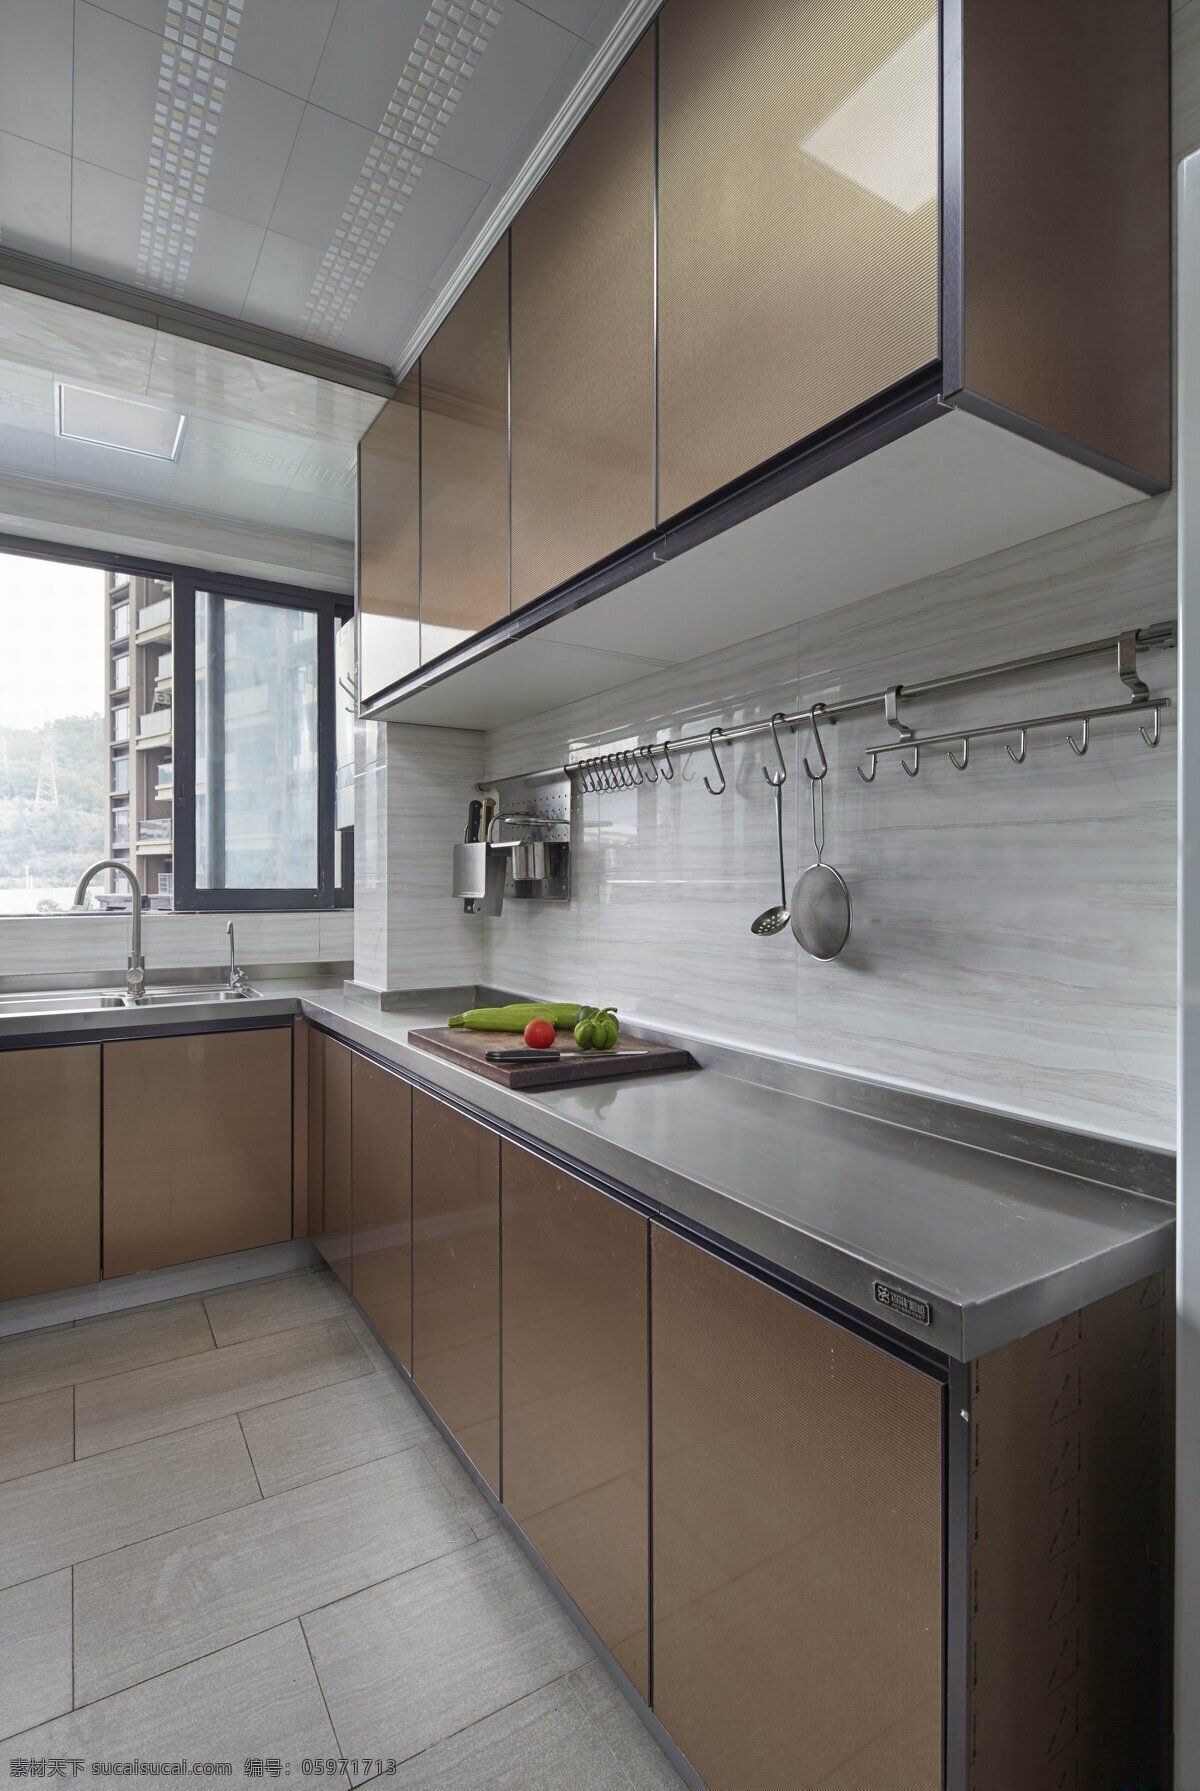 简约 厨房 橱柜 设计图 家居 家居生活 室内设计 装修 室内 家具 装修设计 环境设计 效果图